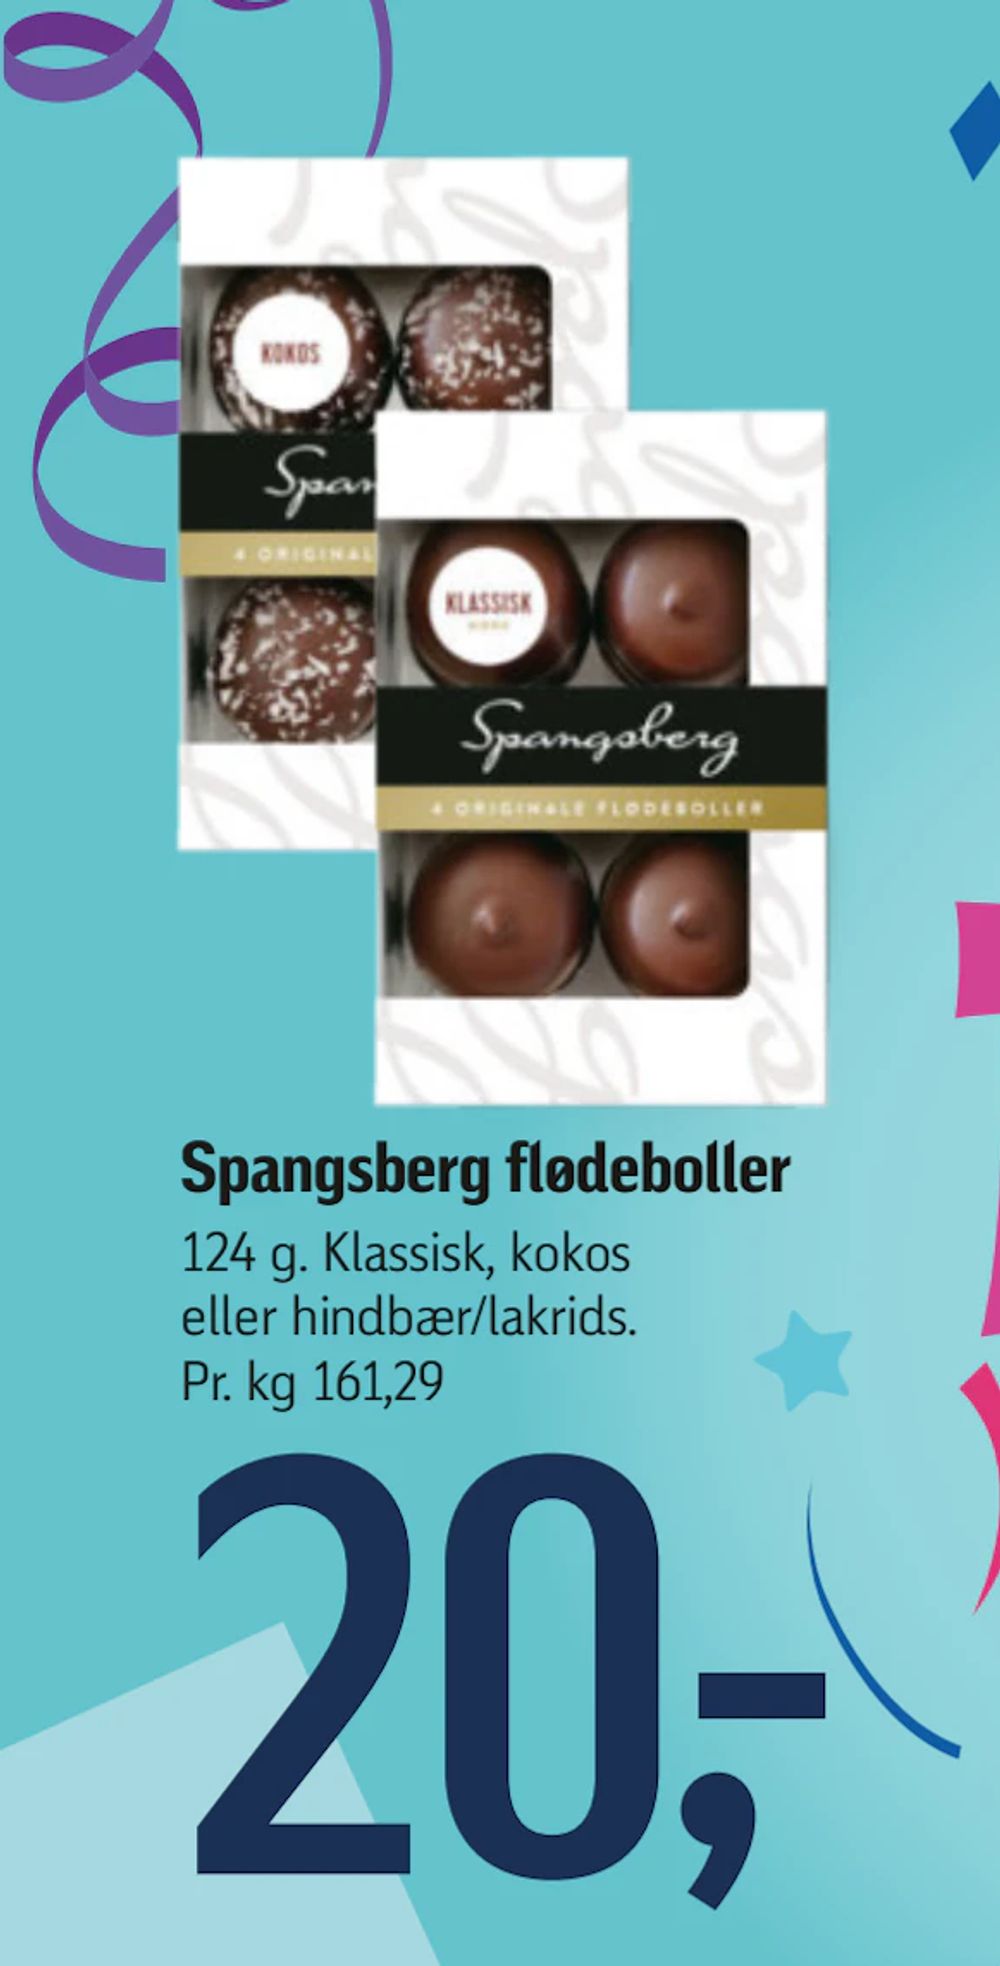 Tilbud på Spangsberg flødeboller fra føtex til 20 kr.